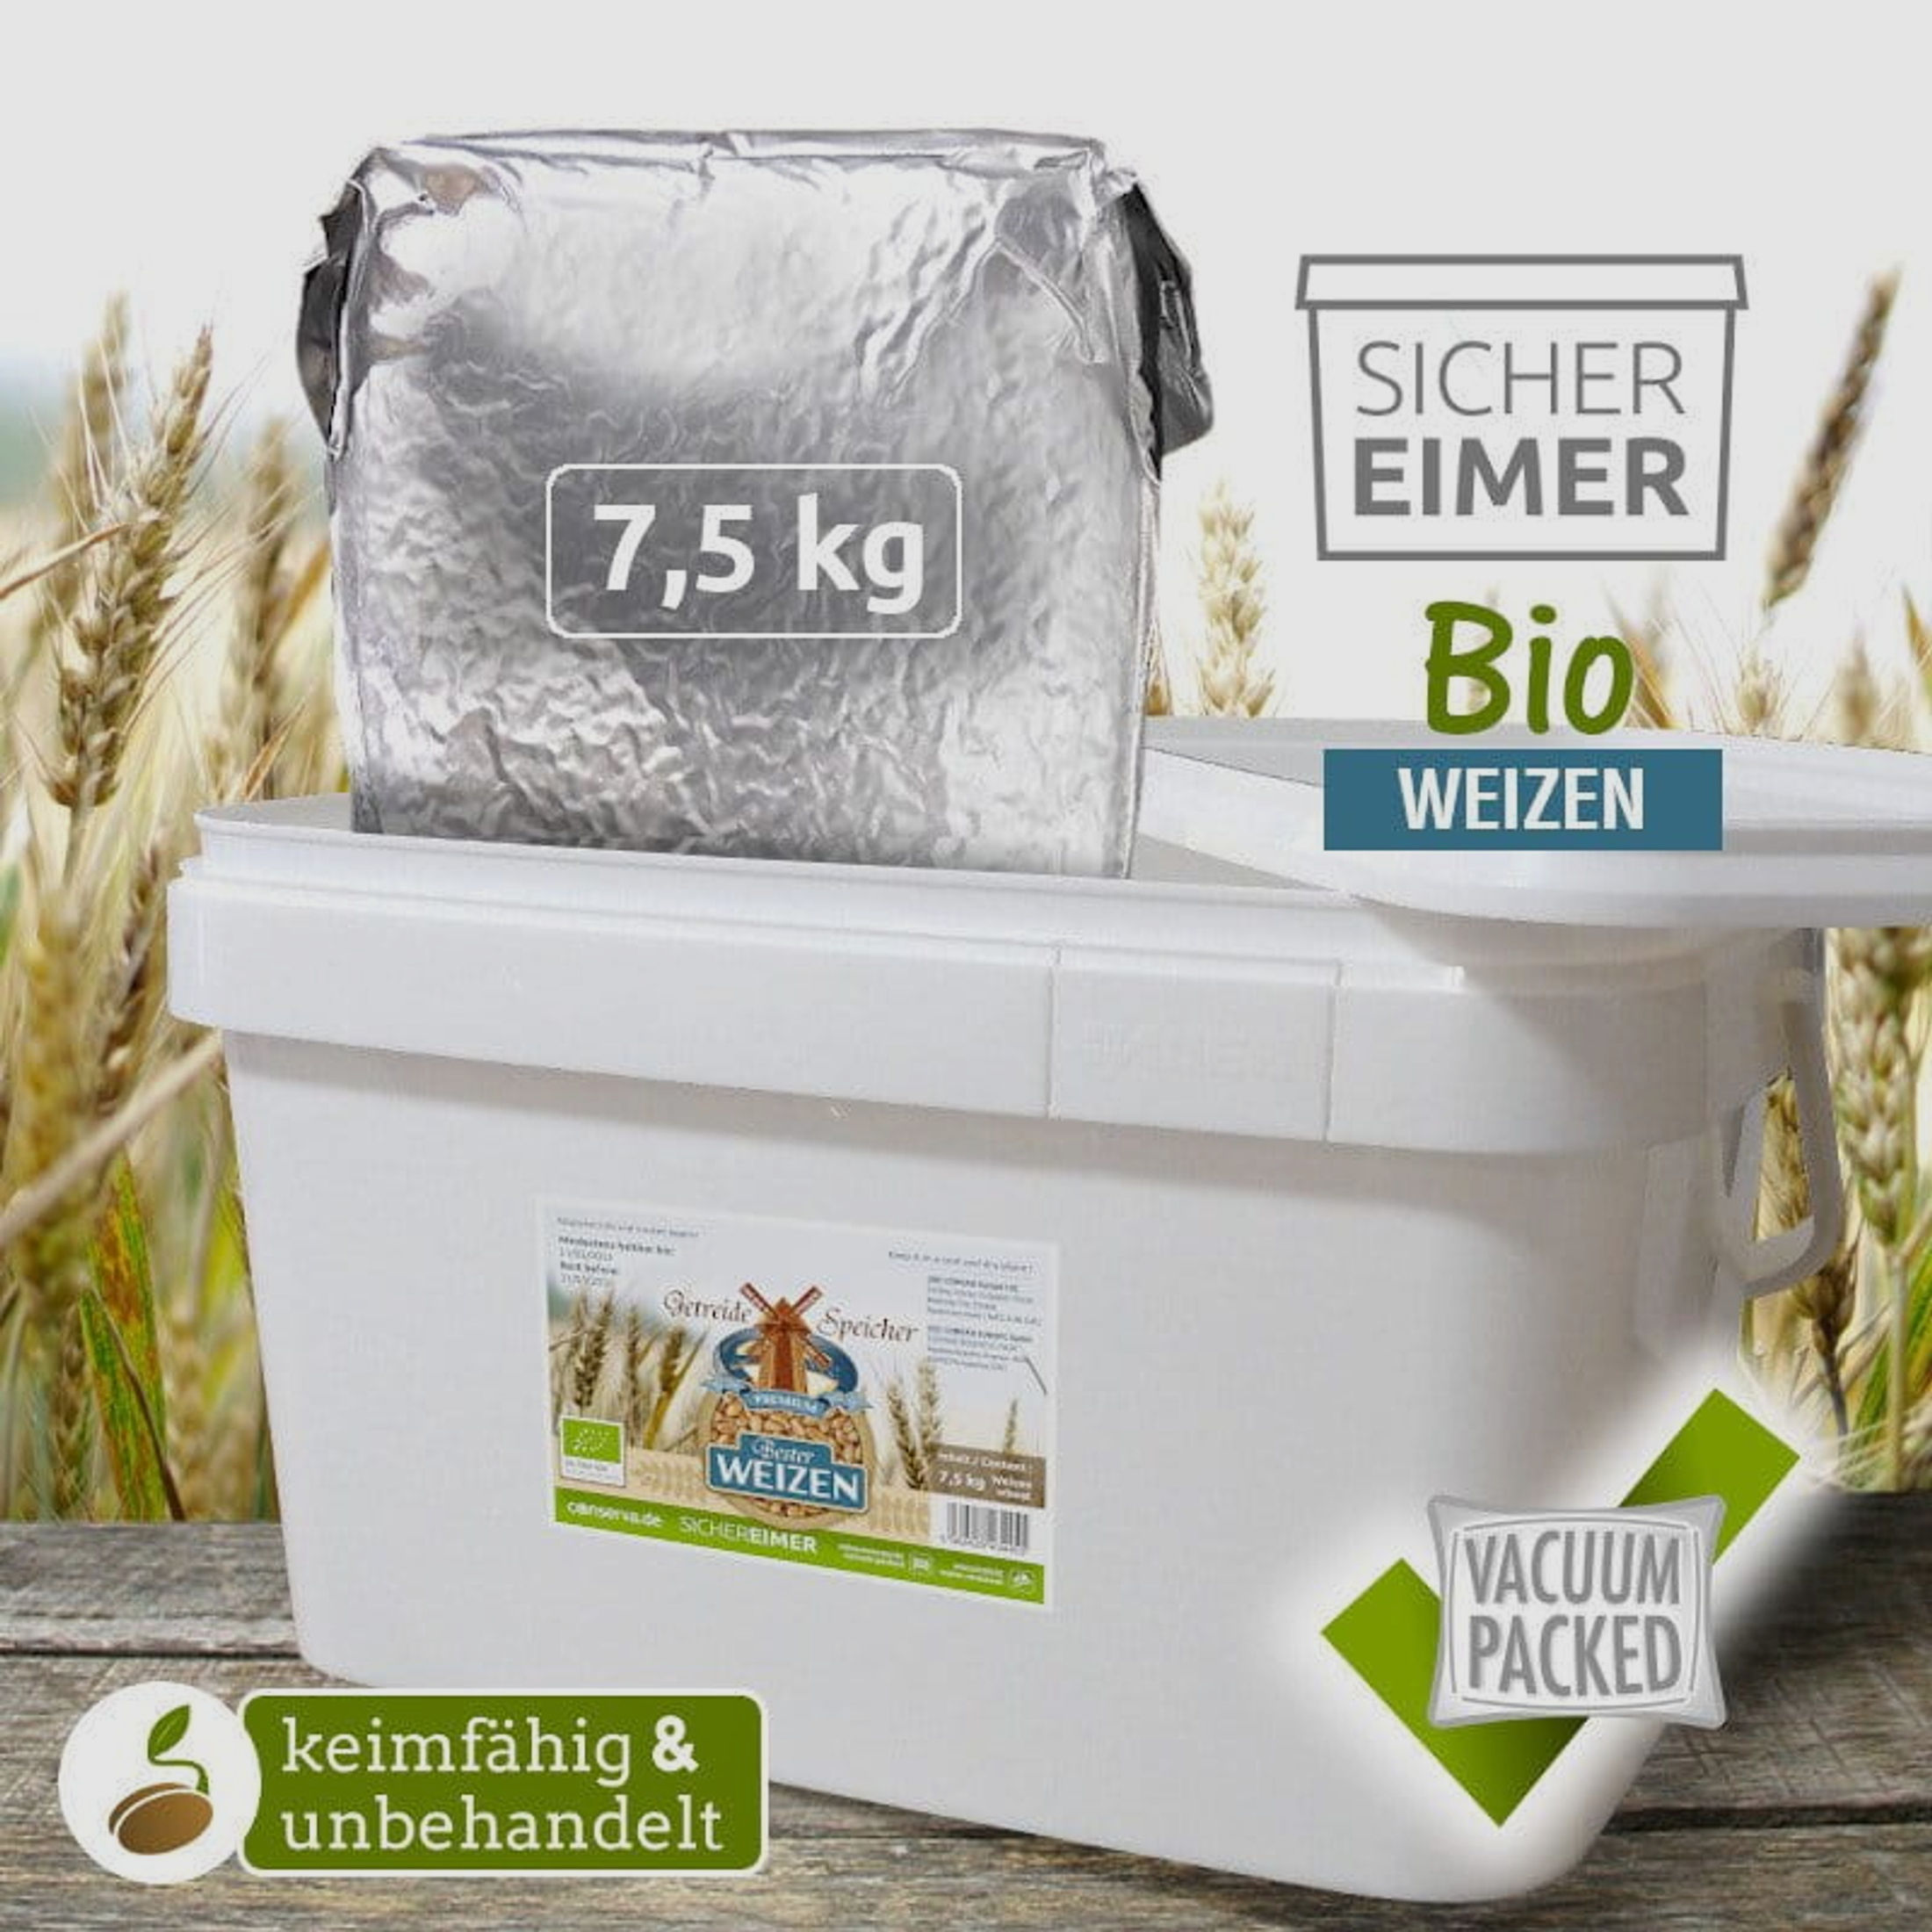 CONVAR GetreideSpeicher BIO Weizen 7,5 kg